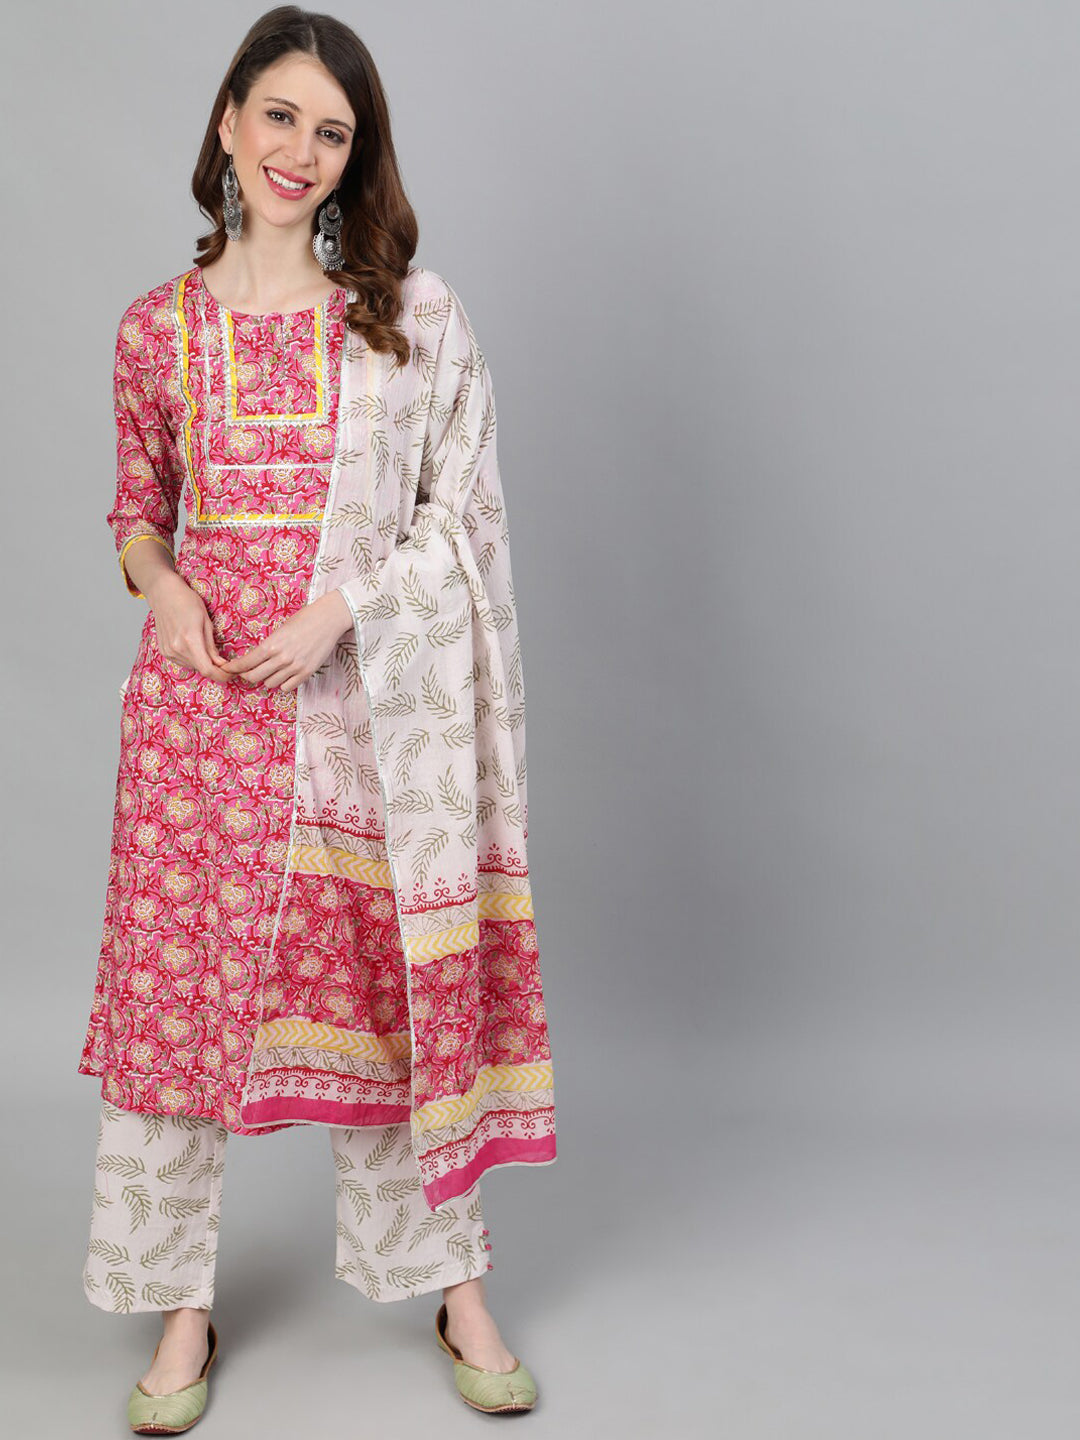 Buy Jaipur Kurti Women's Cotton Kurta Set (JKPAT4622_Pink_3XL) at Amazon.in